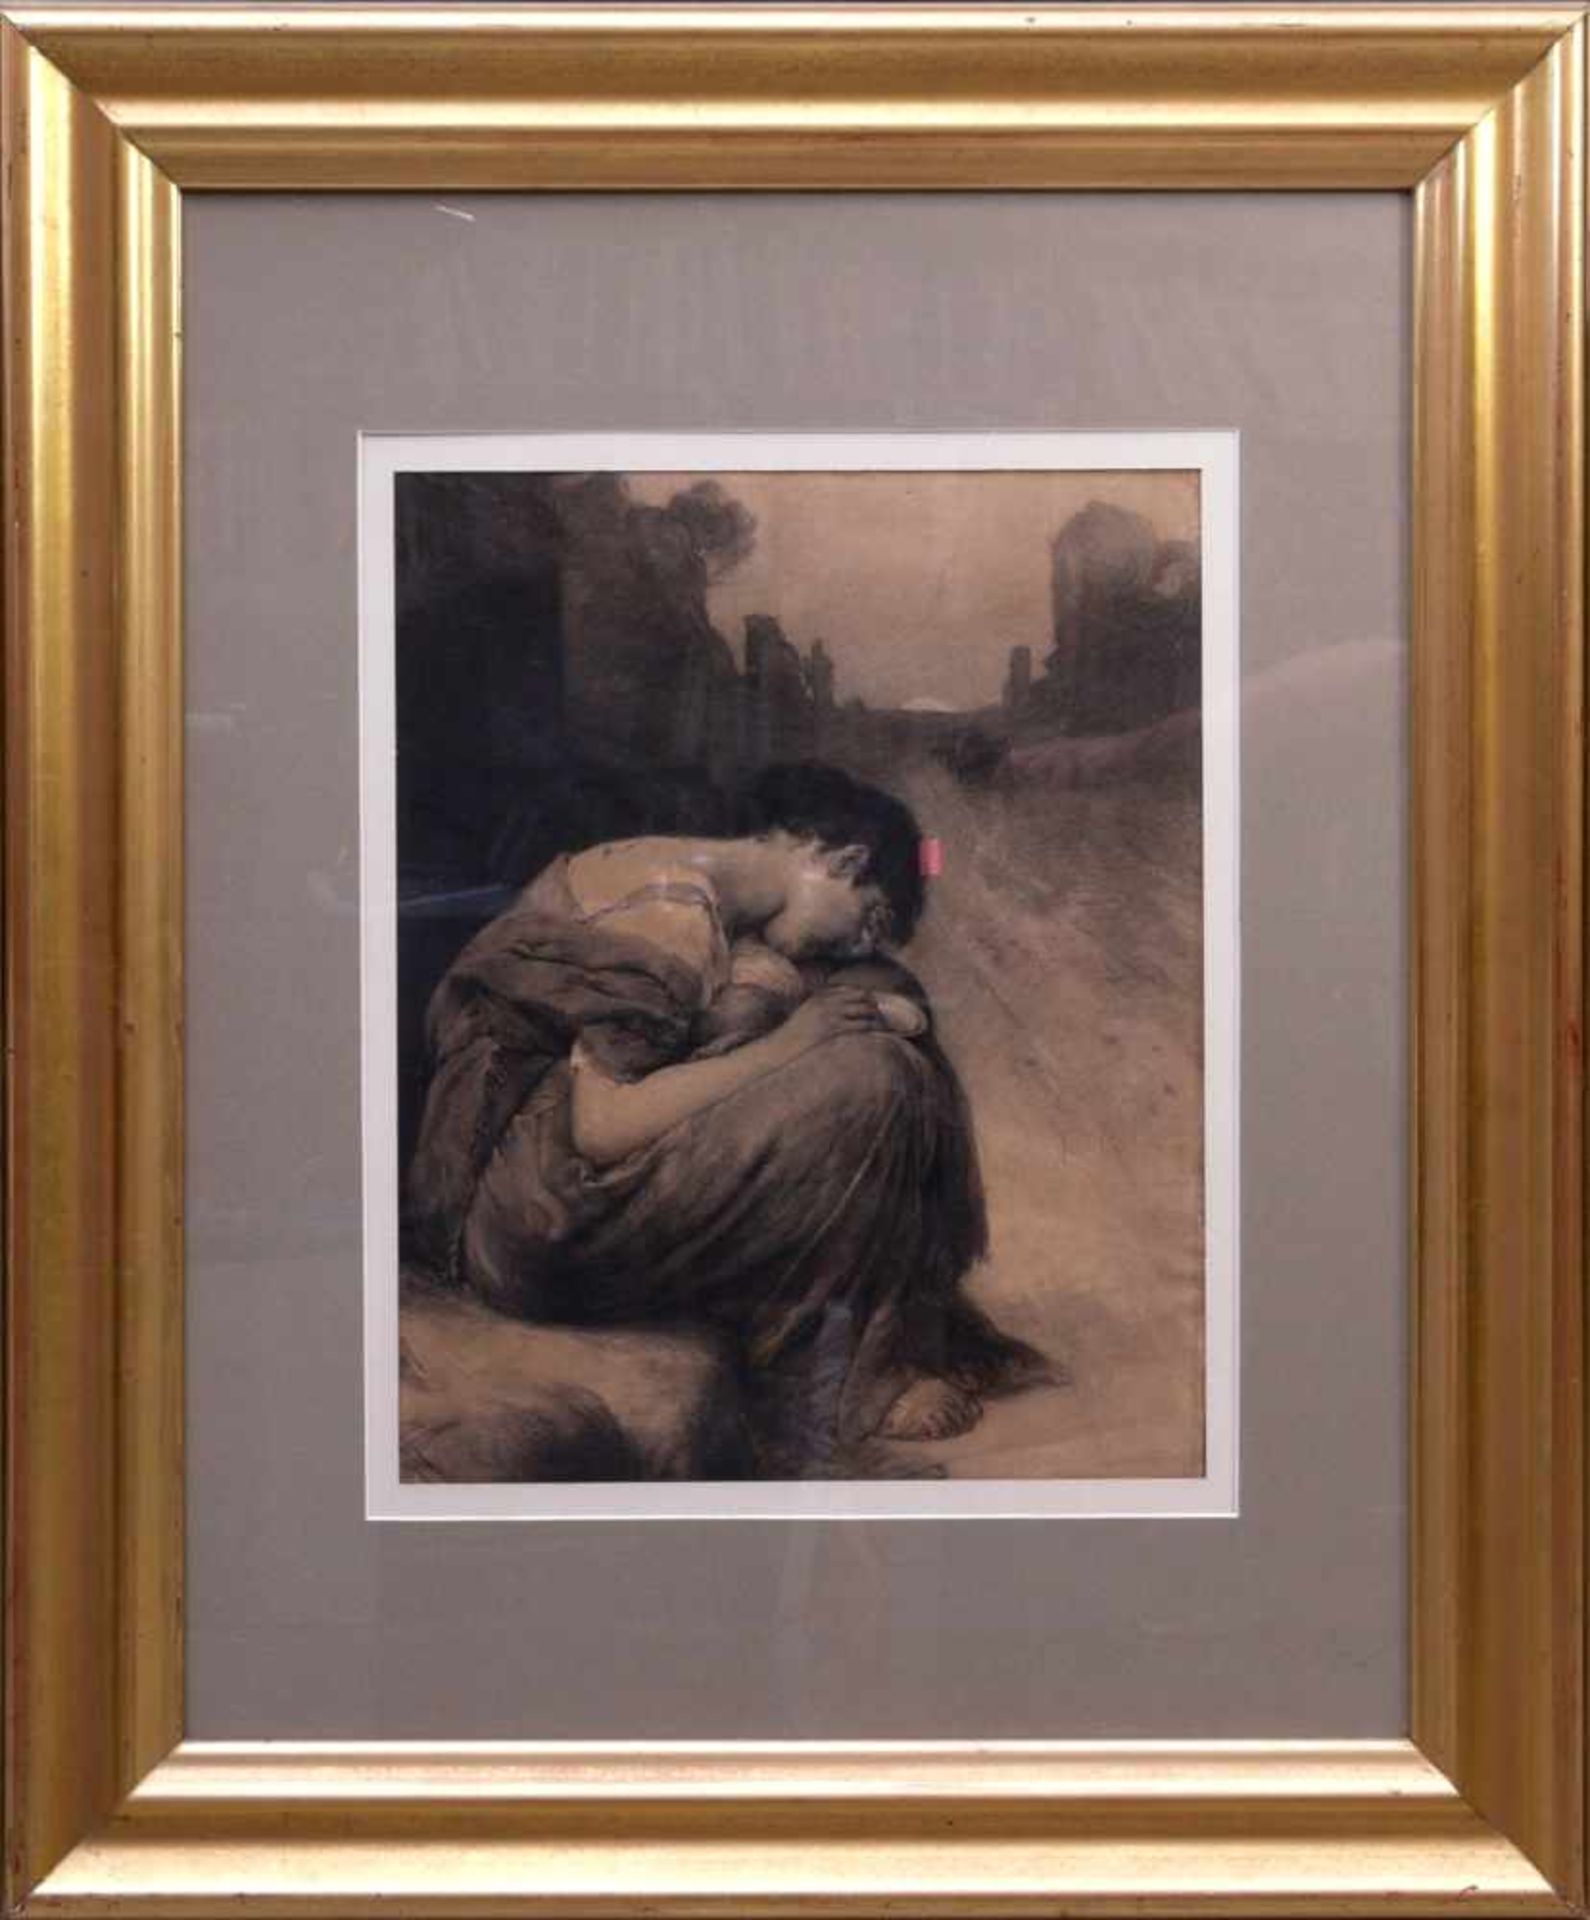 Unsigniert - Bettlerin Kohlezeichnung um 1900Melancholische Darstellung einer weinenden Frau, die in